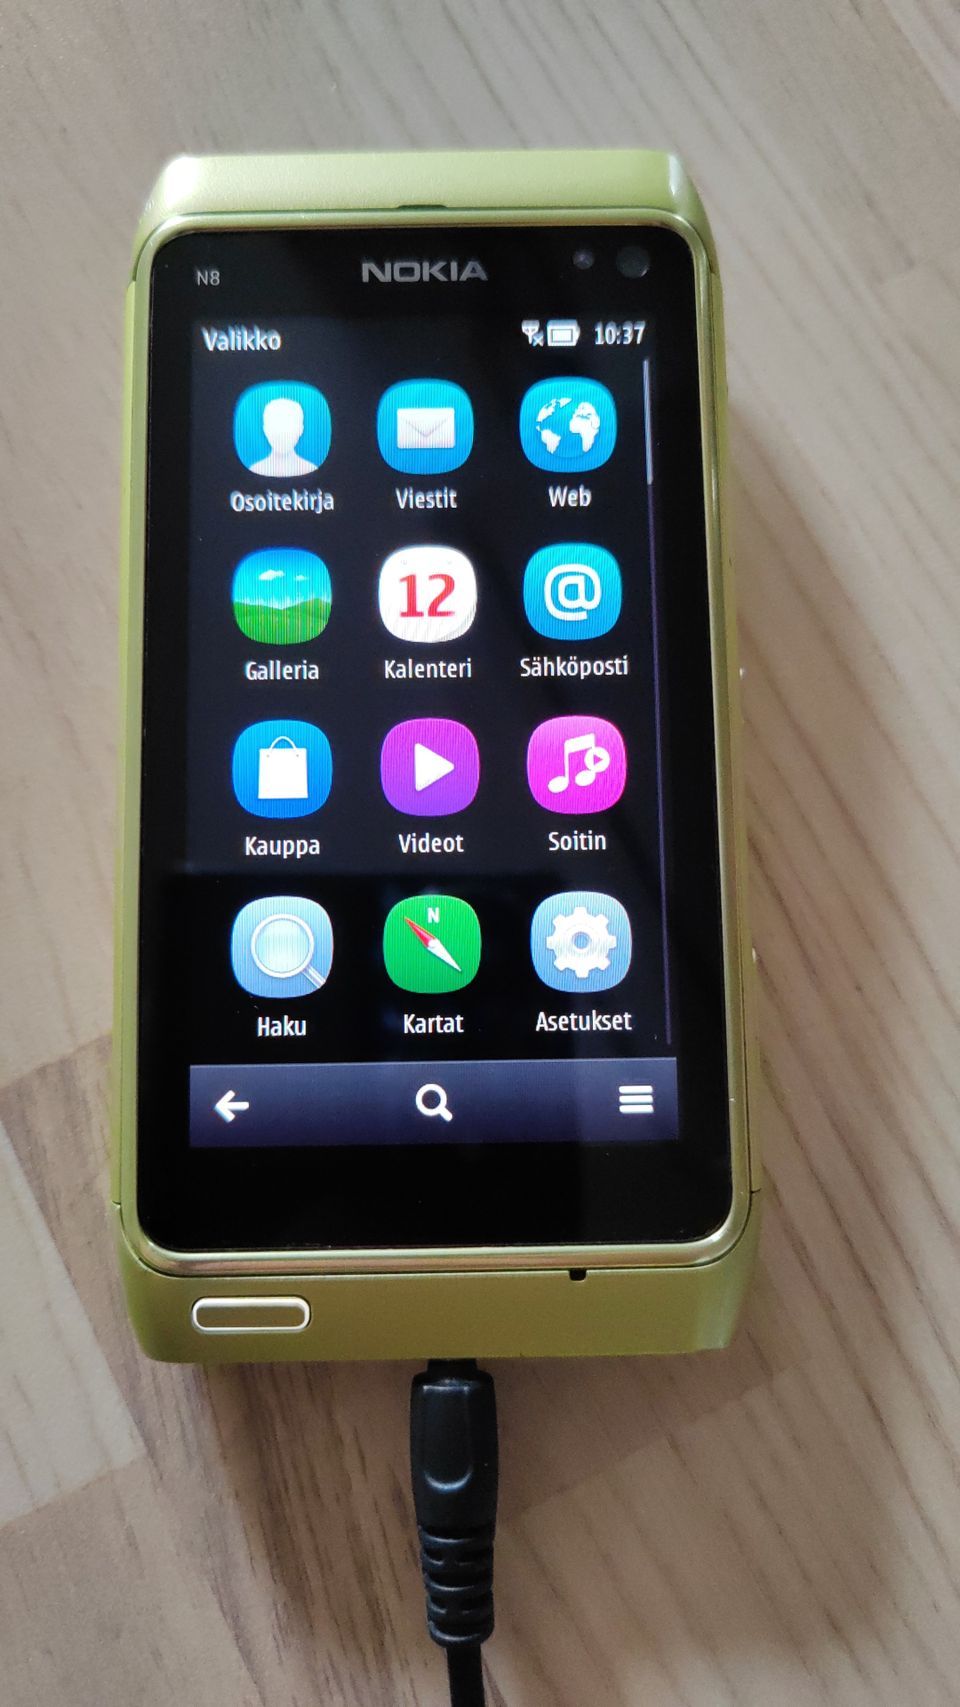 Nokia N8 puhelin